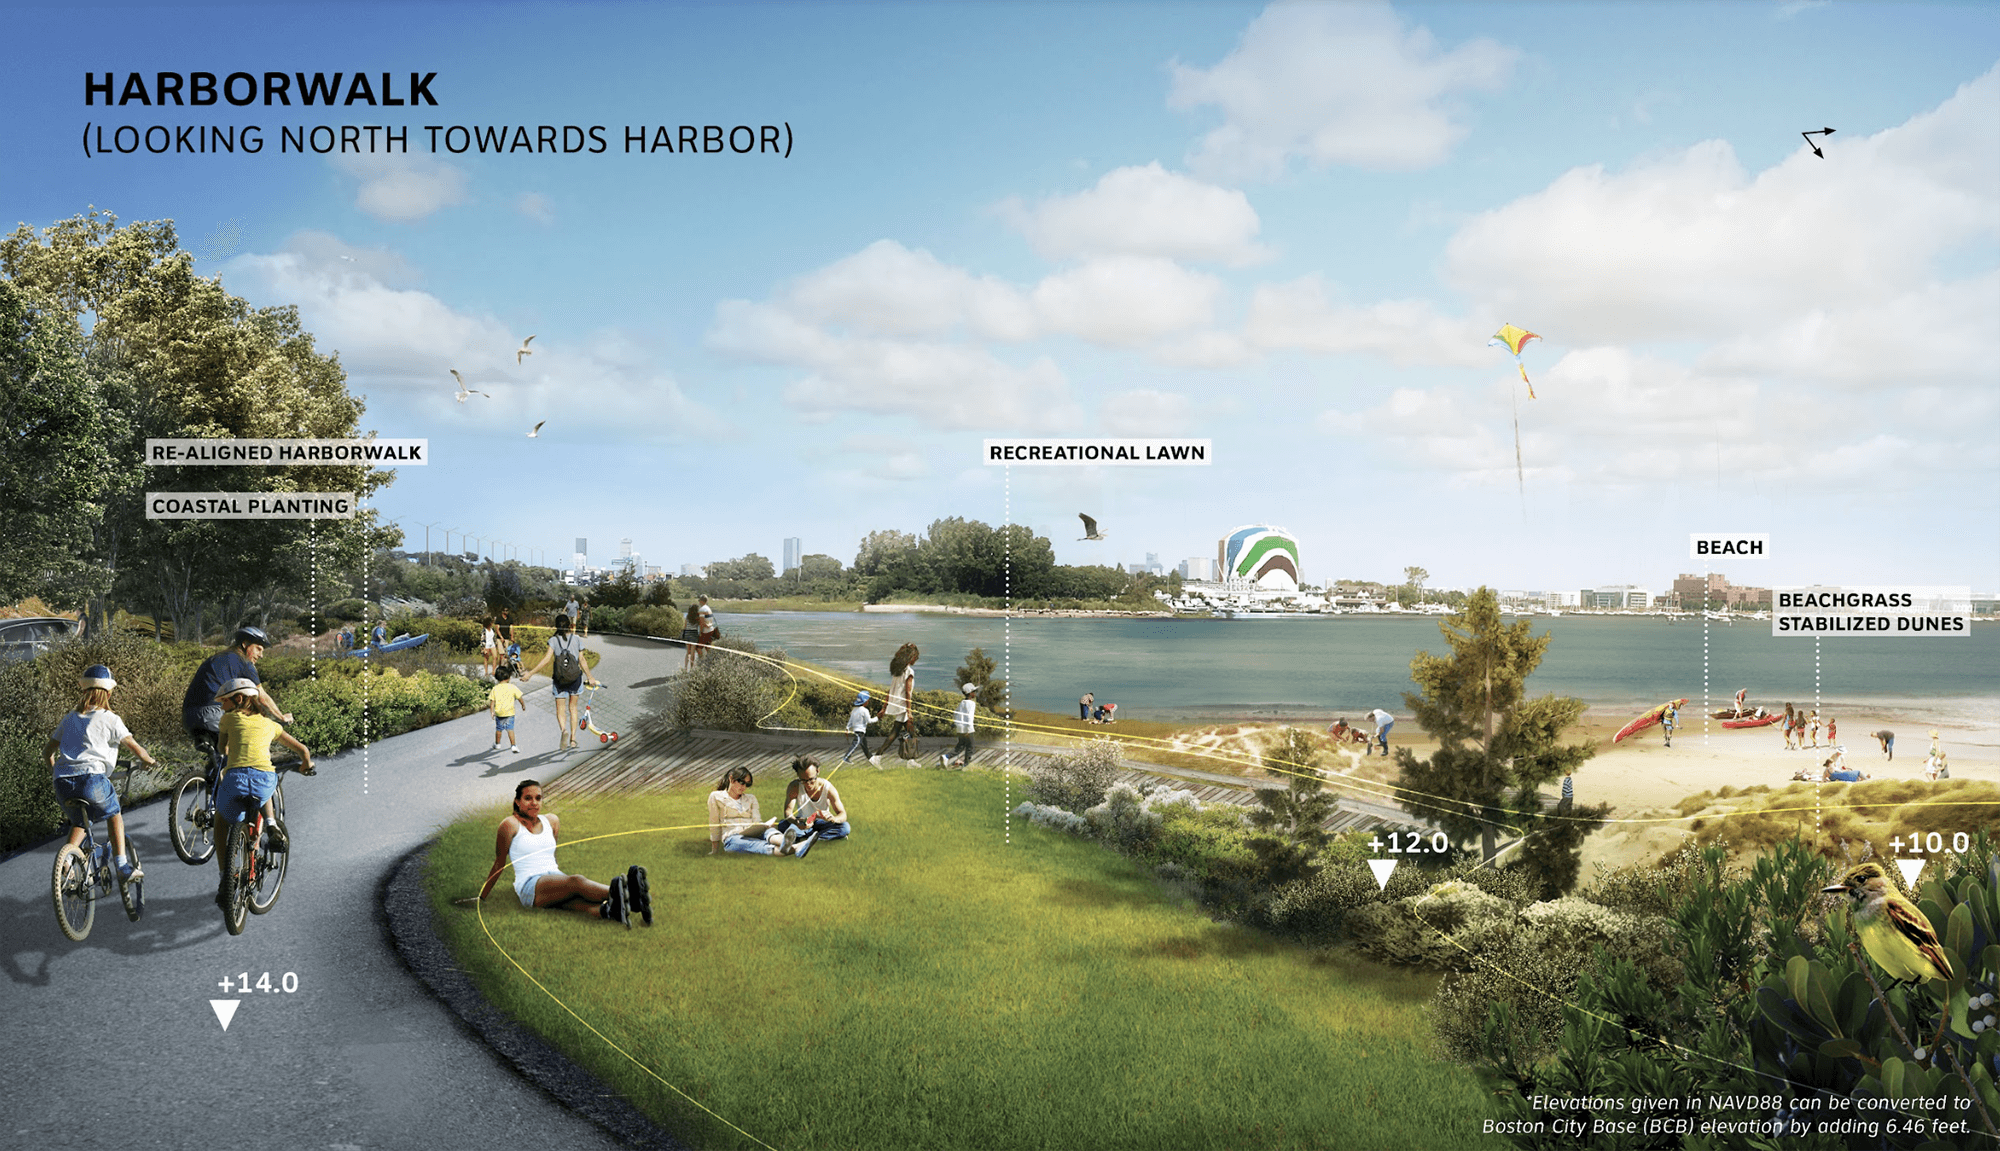 SCAPE's proposal for Tenean Beach in Boston